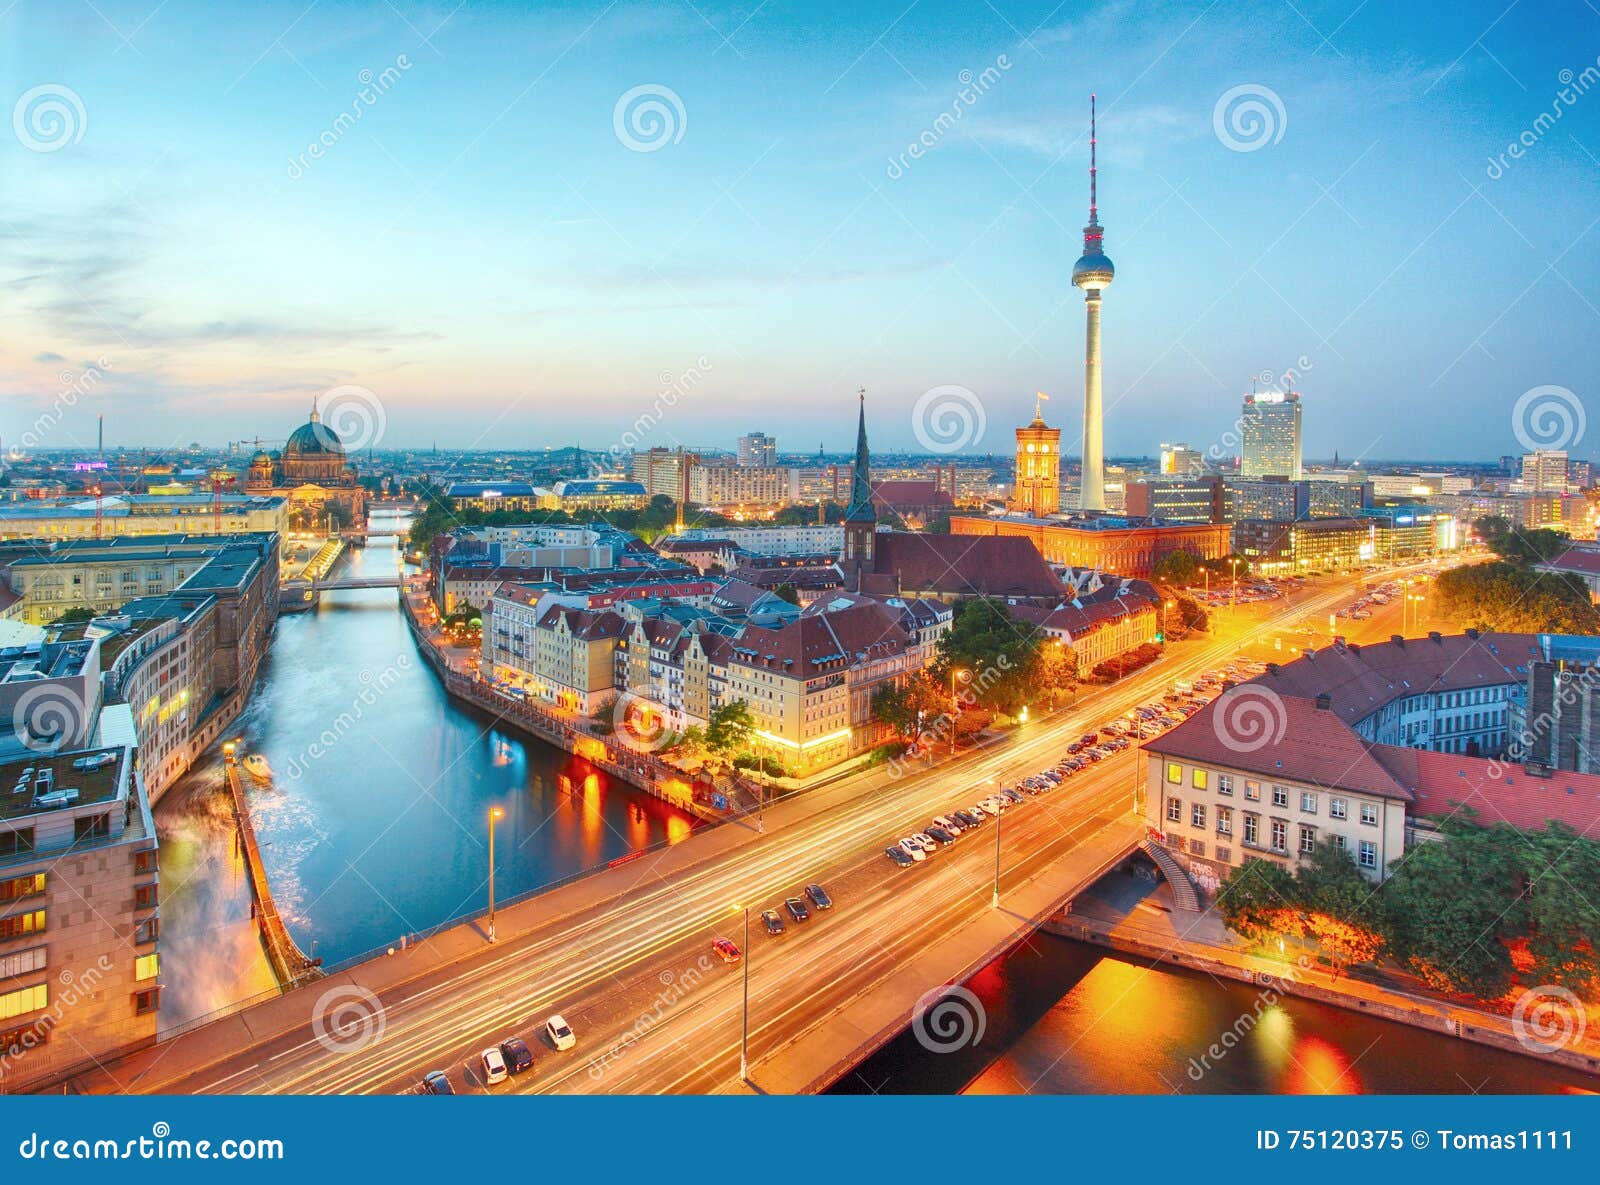 germany, berlin cityscape